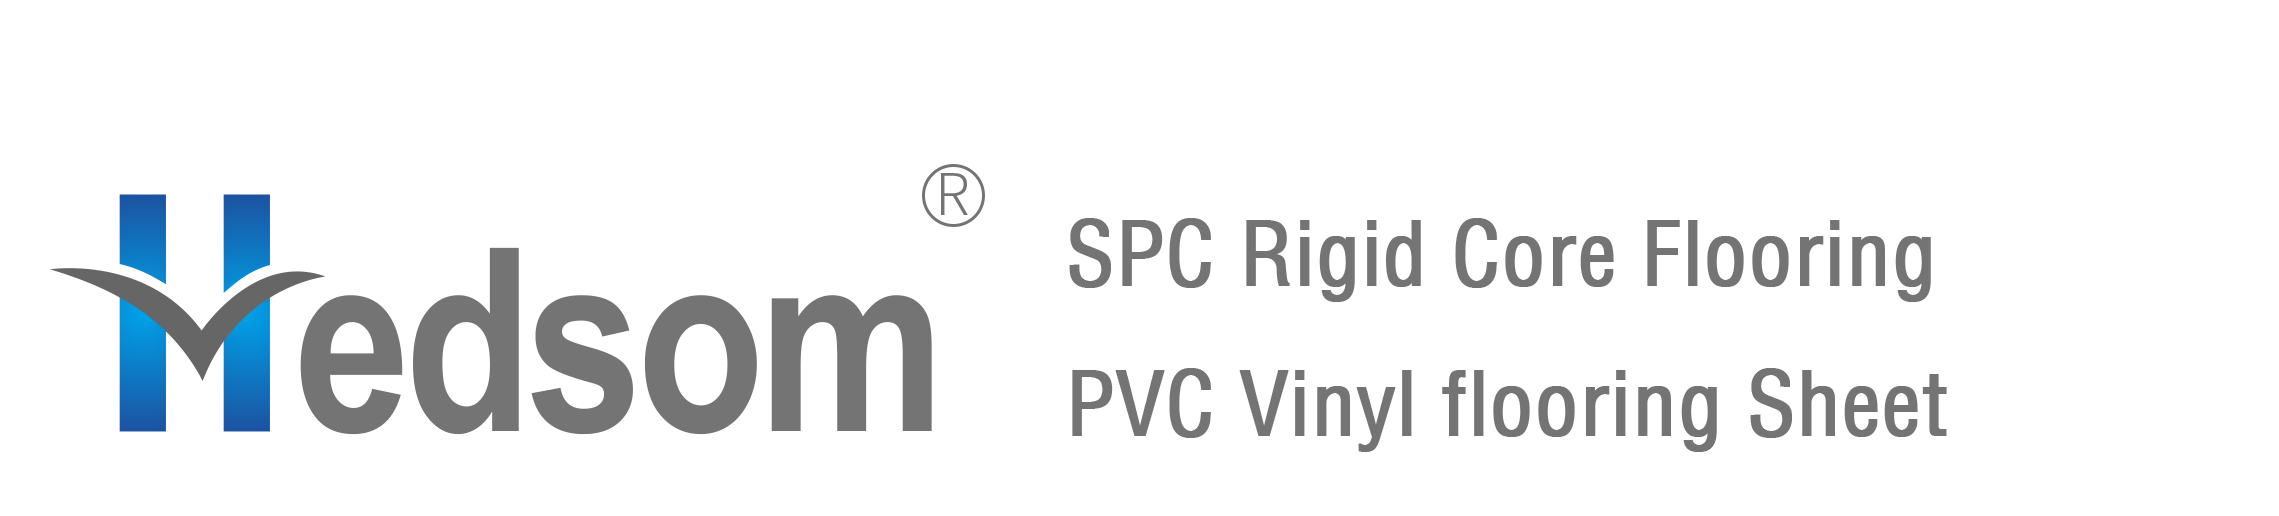 Hesom PVC Vinyl flooring